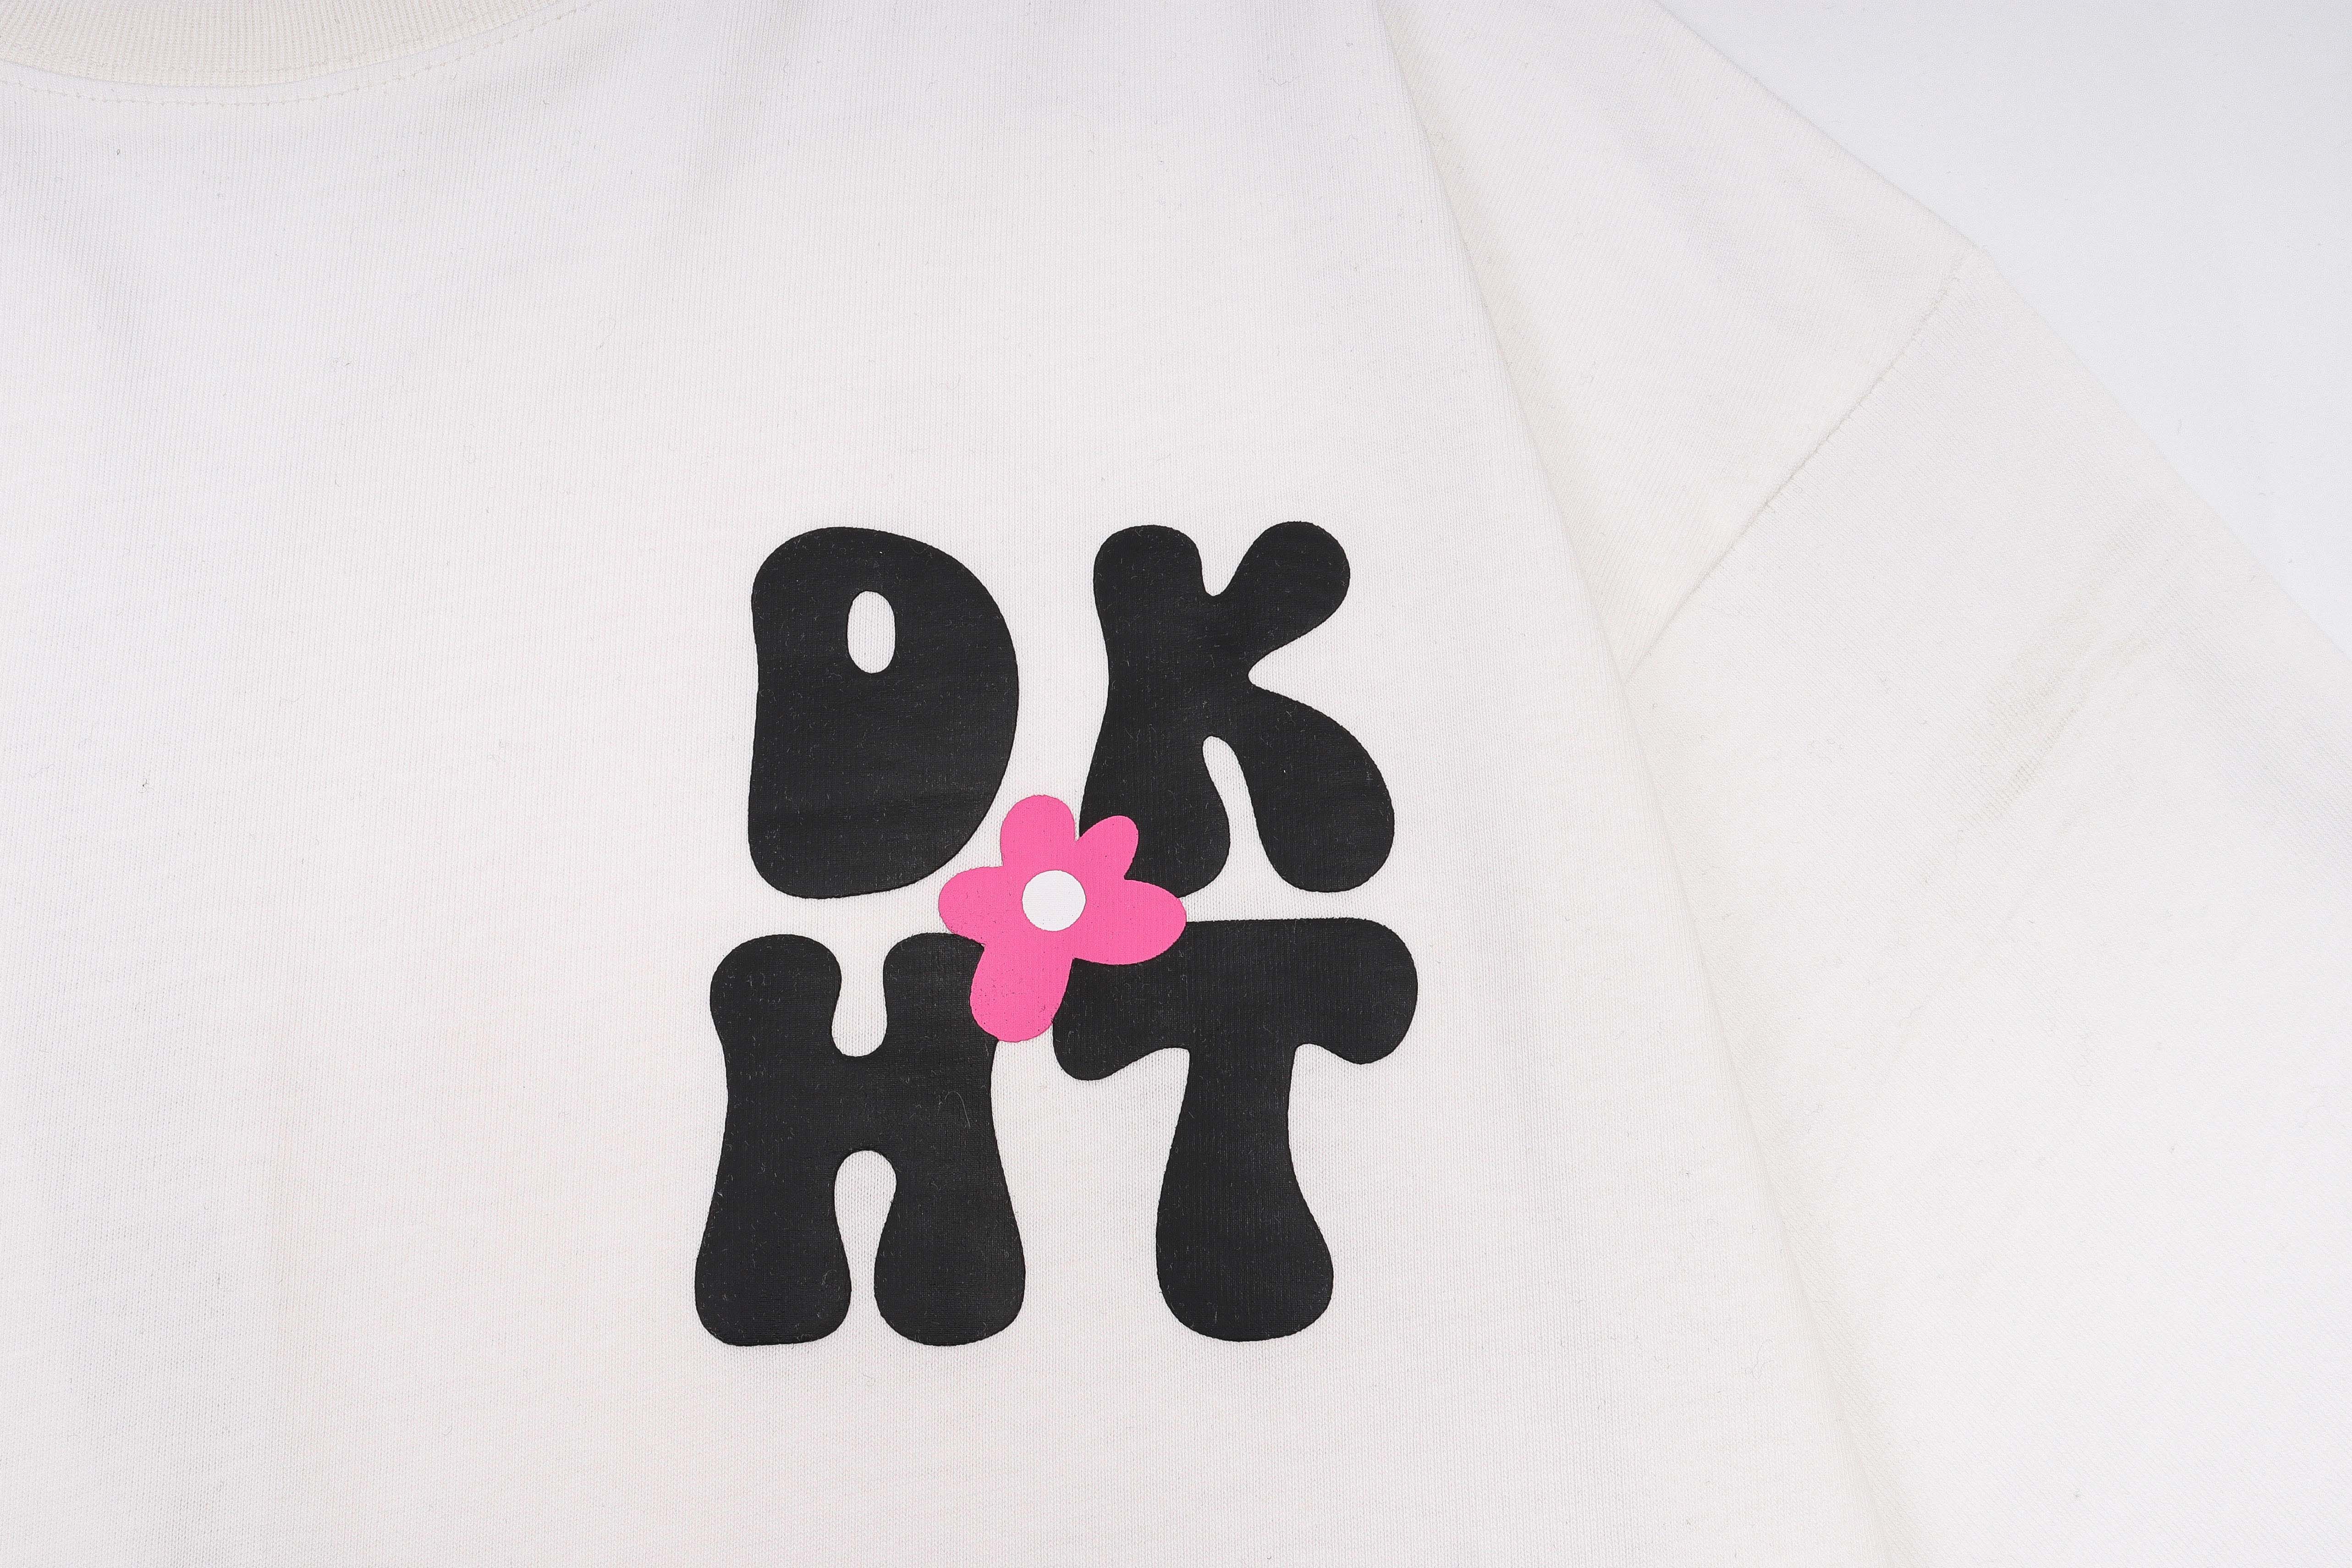 'Cute DHT' T Shirt - Santo 